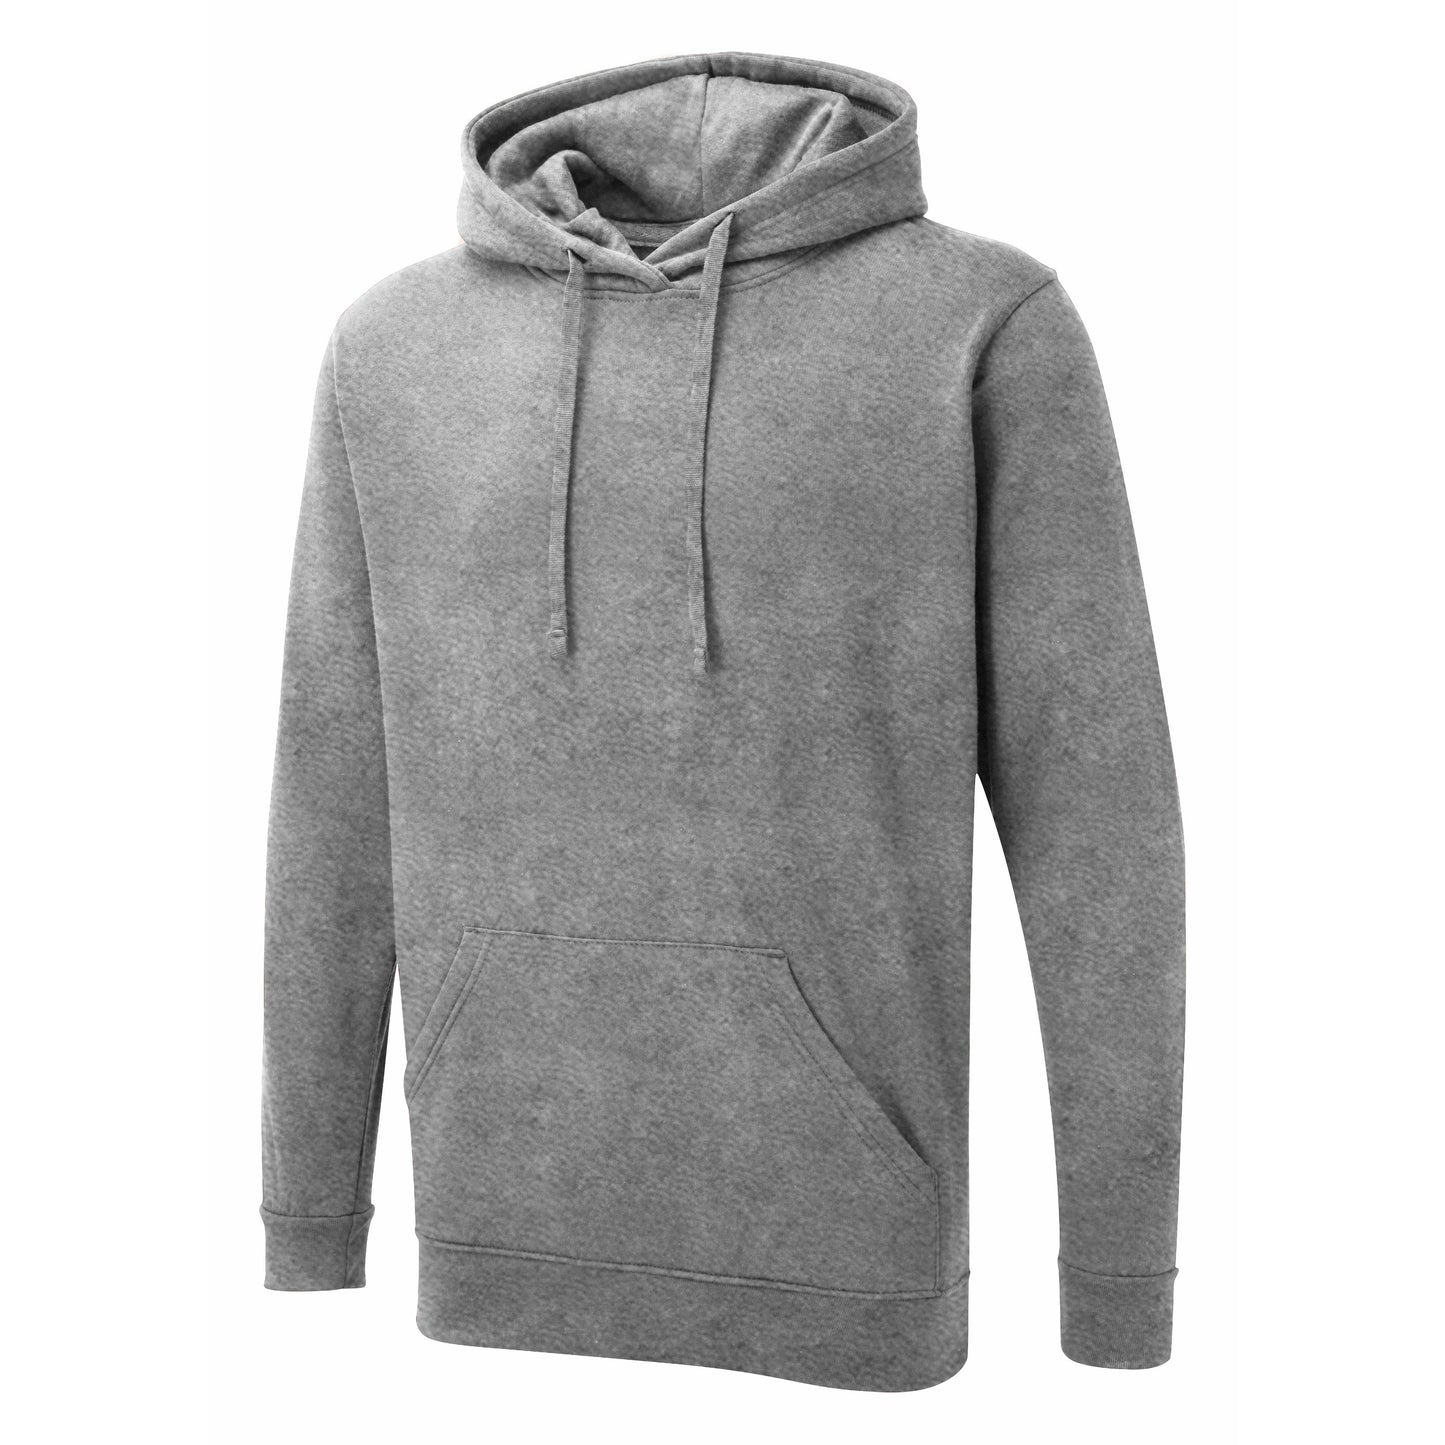 Heather grey UX hoodie